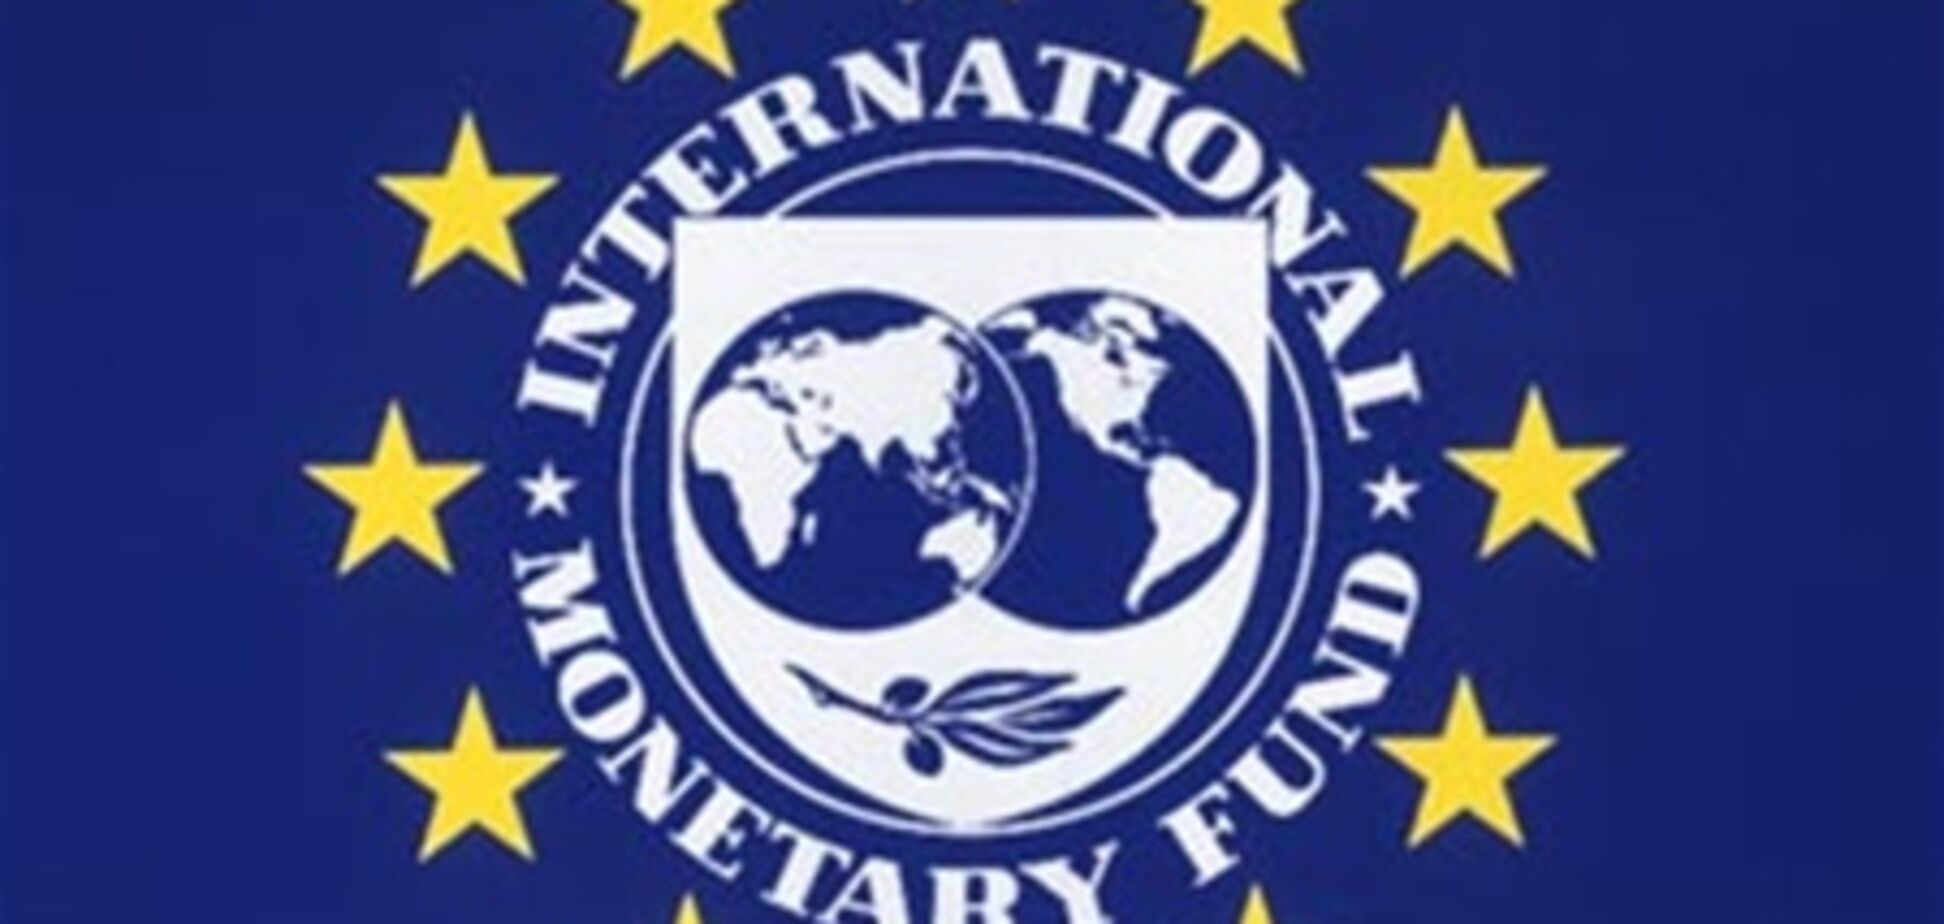 Миссия МВФ начала работу в Украине, 26 октября 2012